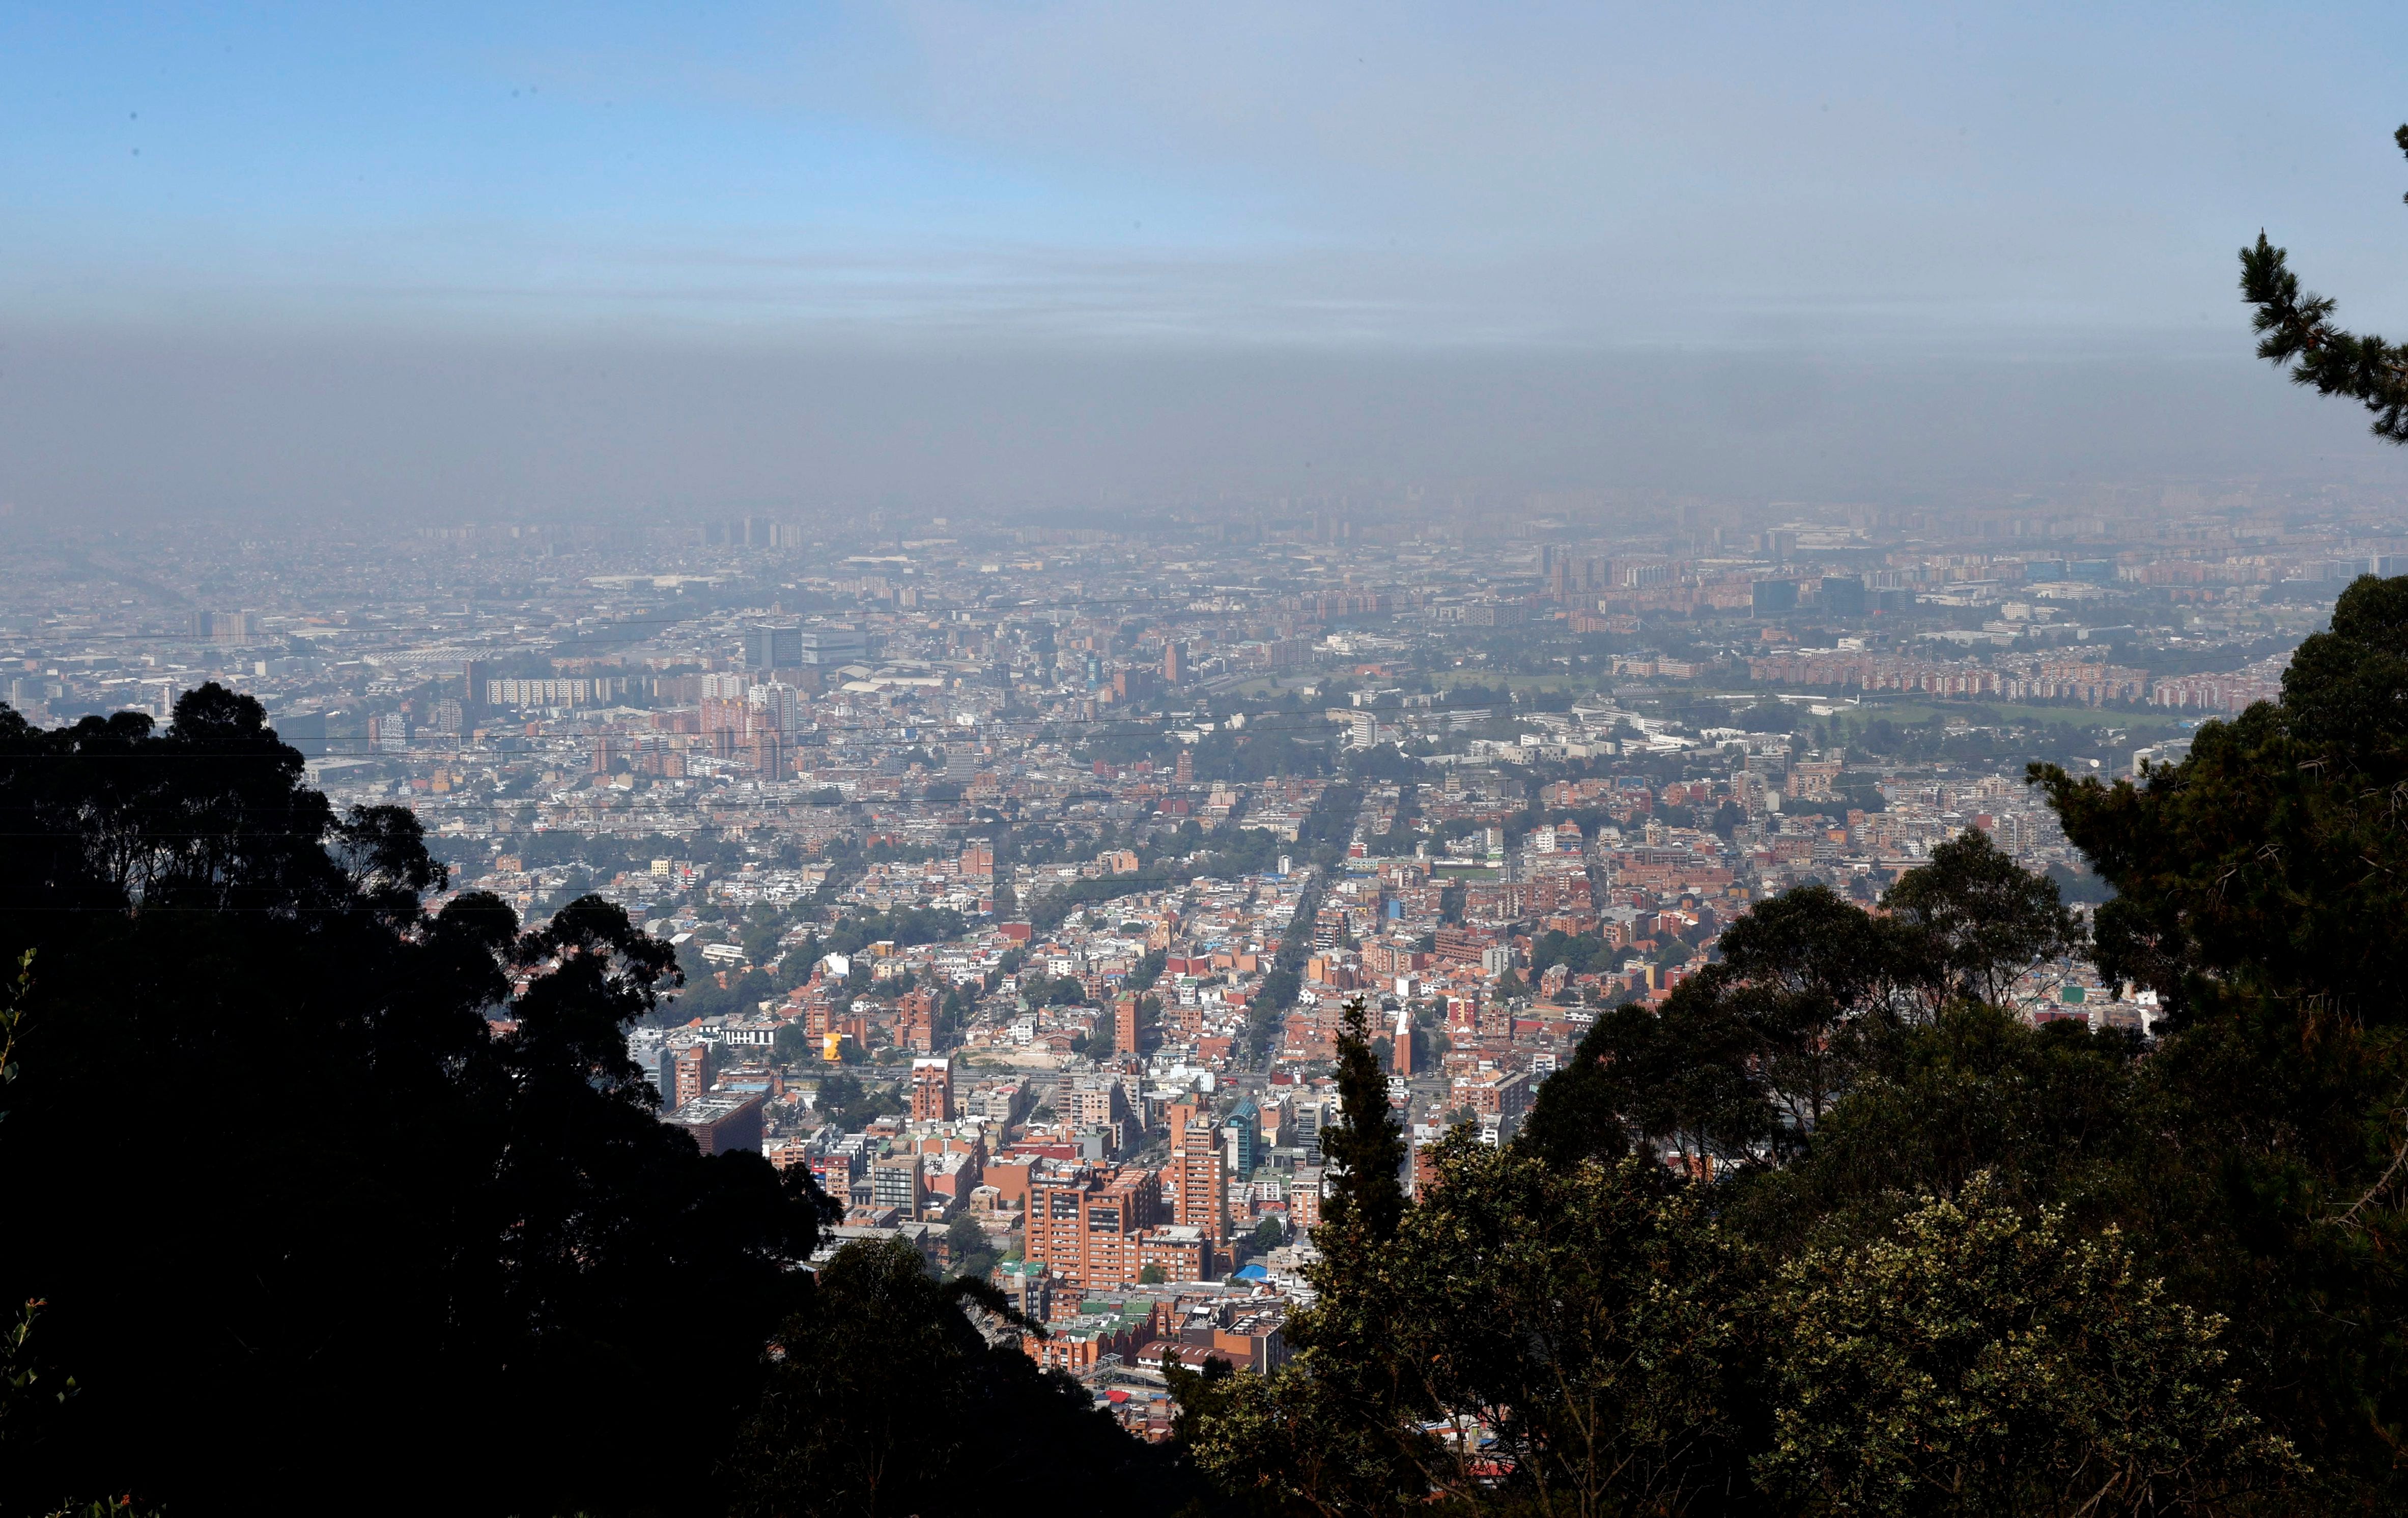 Una capa de humo sobre la ciudad ocasionada por un incendio forestal en Bogotá - crédito Mauricio Dueñas Castañeda/EFE
